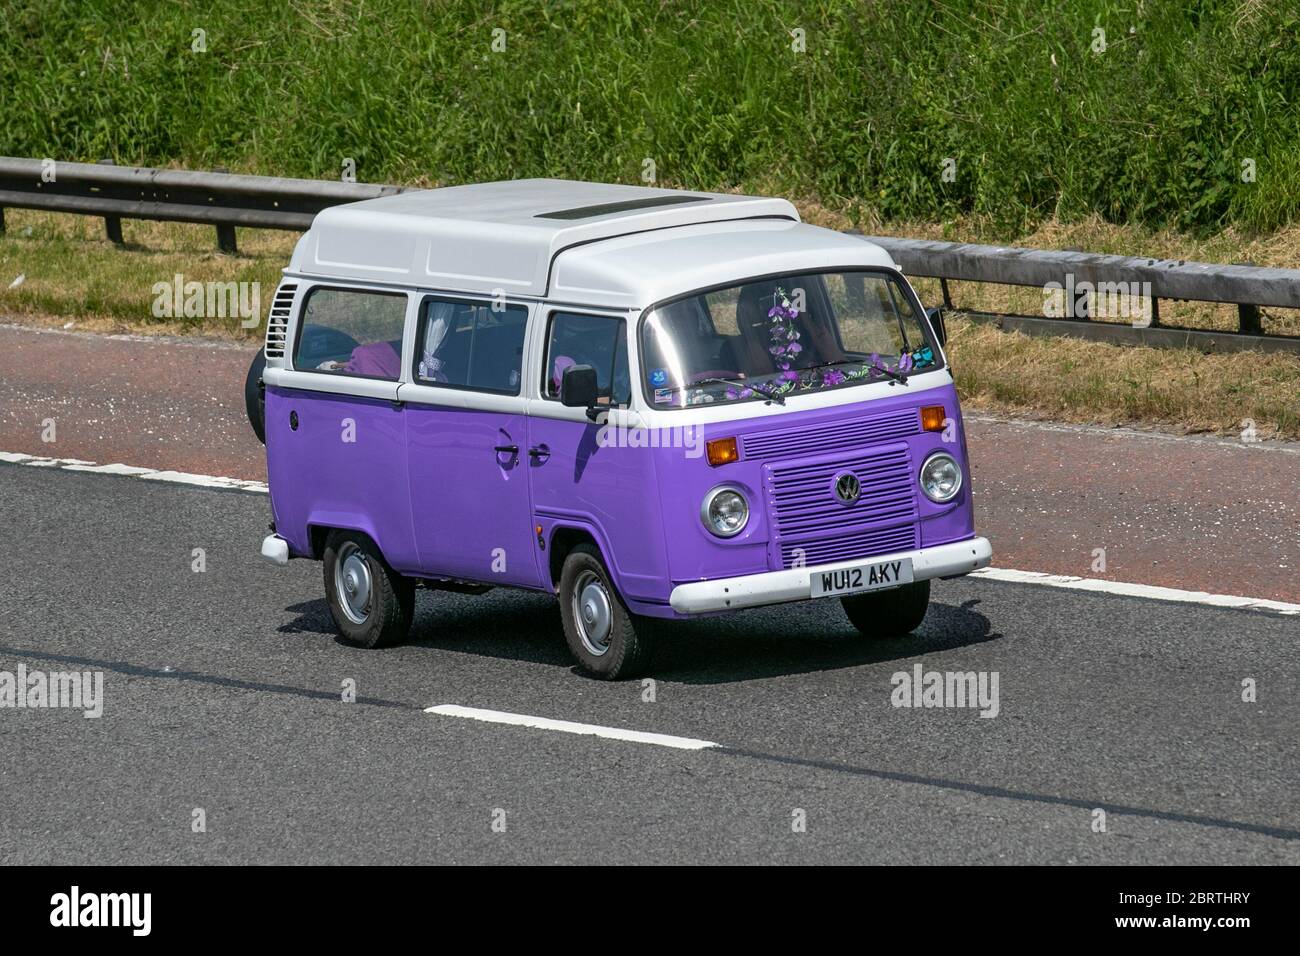 2012 VW Volkswagen kombi,Touring Caravans and motorhomes, purple white Vee  Dub, campervans, RV leisure vehicle,